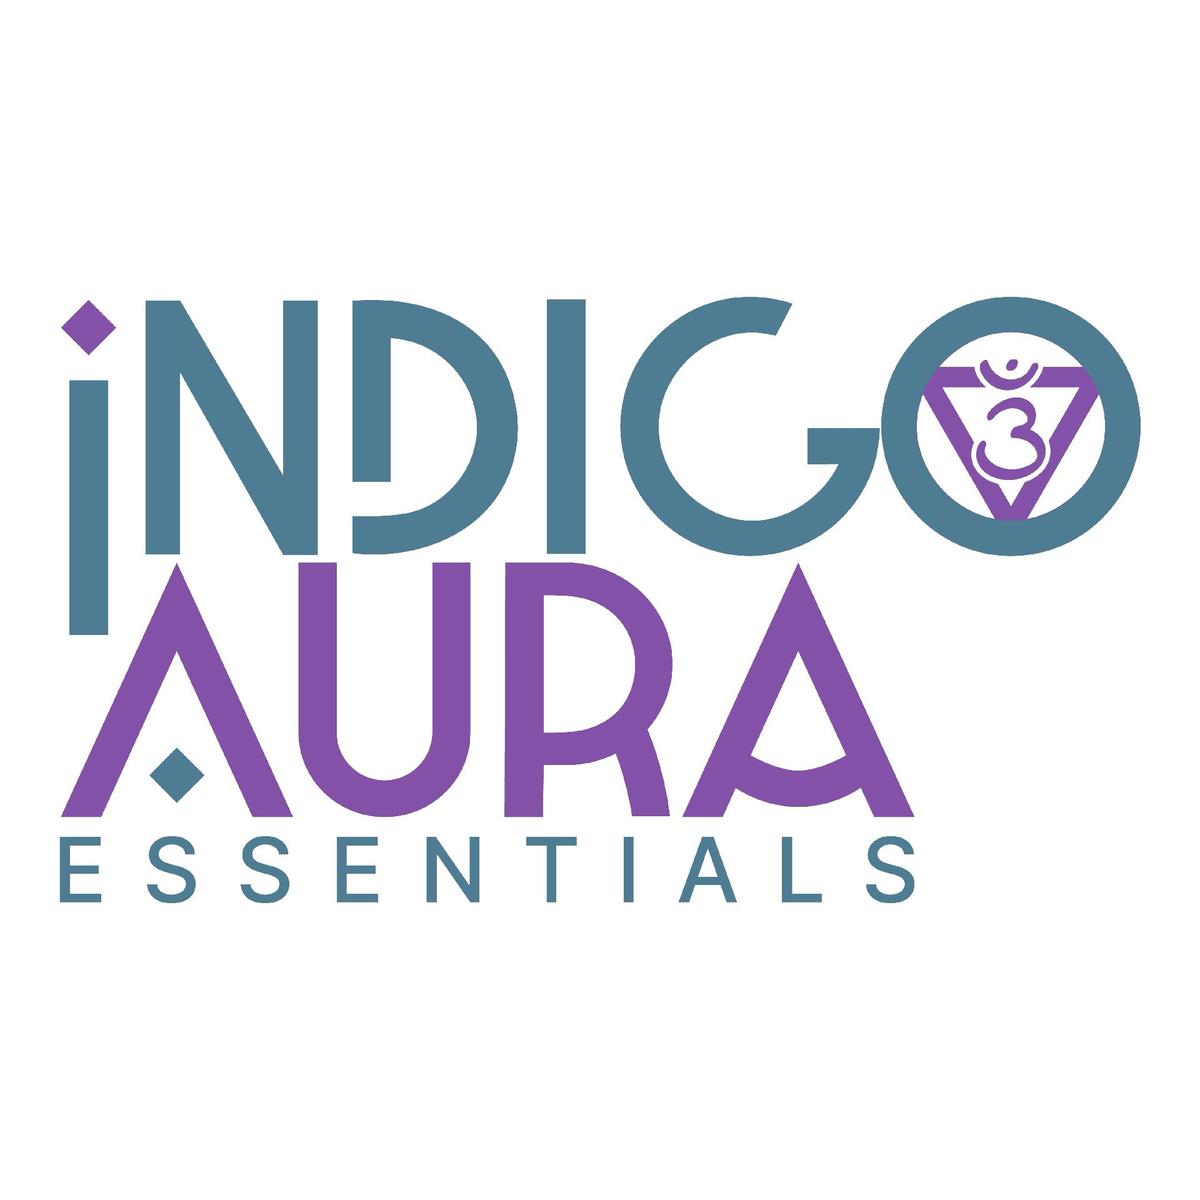 Indigo Aura's images